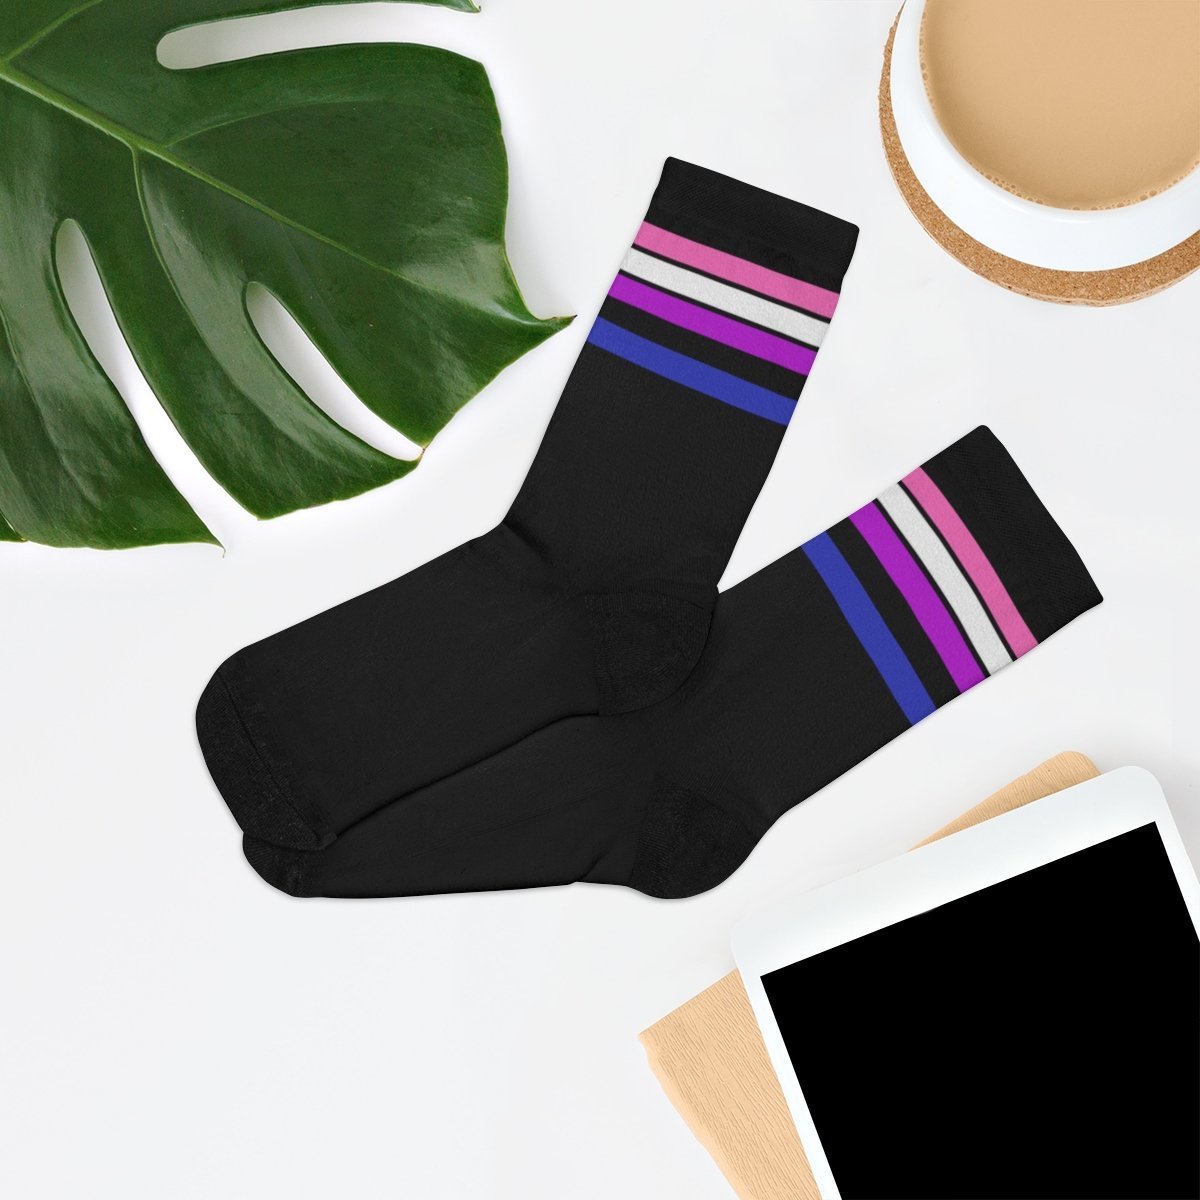 Genderfluid Flag Socks - black - On Trend Shirts